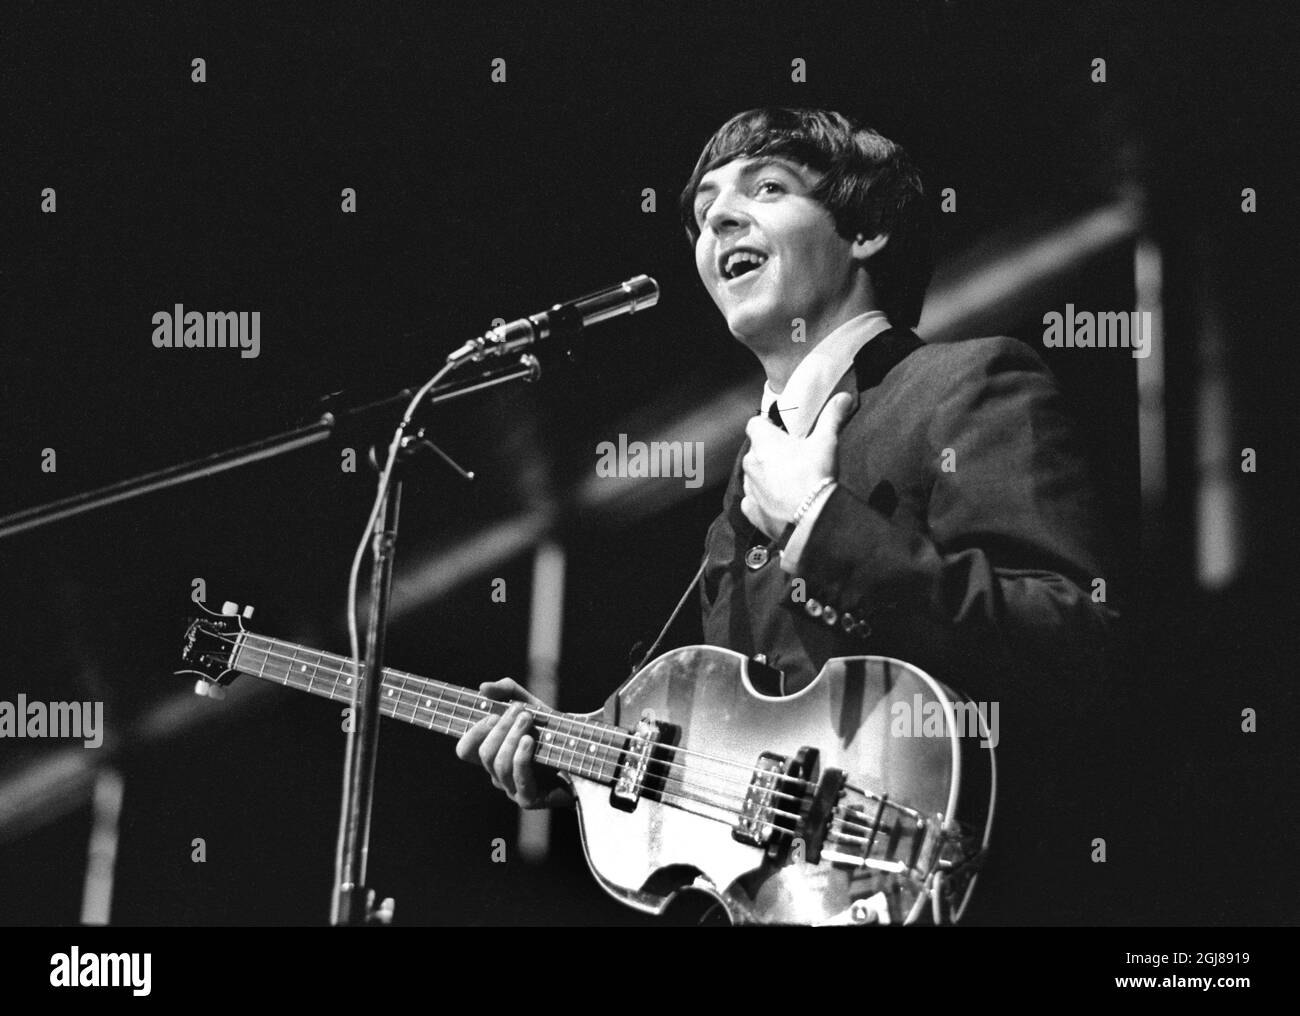 STOCKHOLM 1964-07-28 *POUR VOS DOSSIERS* Paul McCartney et les Beatles sont vus pendant un concert au stade de glace de Johanneshov à Stockholm, Suède, 28 juillet 1964 Foto: Folke Hellberg / DN / TT / Kod: 23 **OUT SWEDEN OUT** Banque D'Images